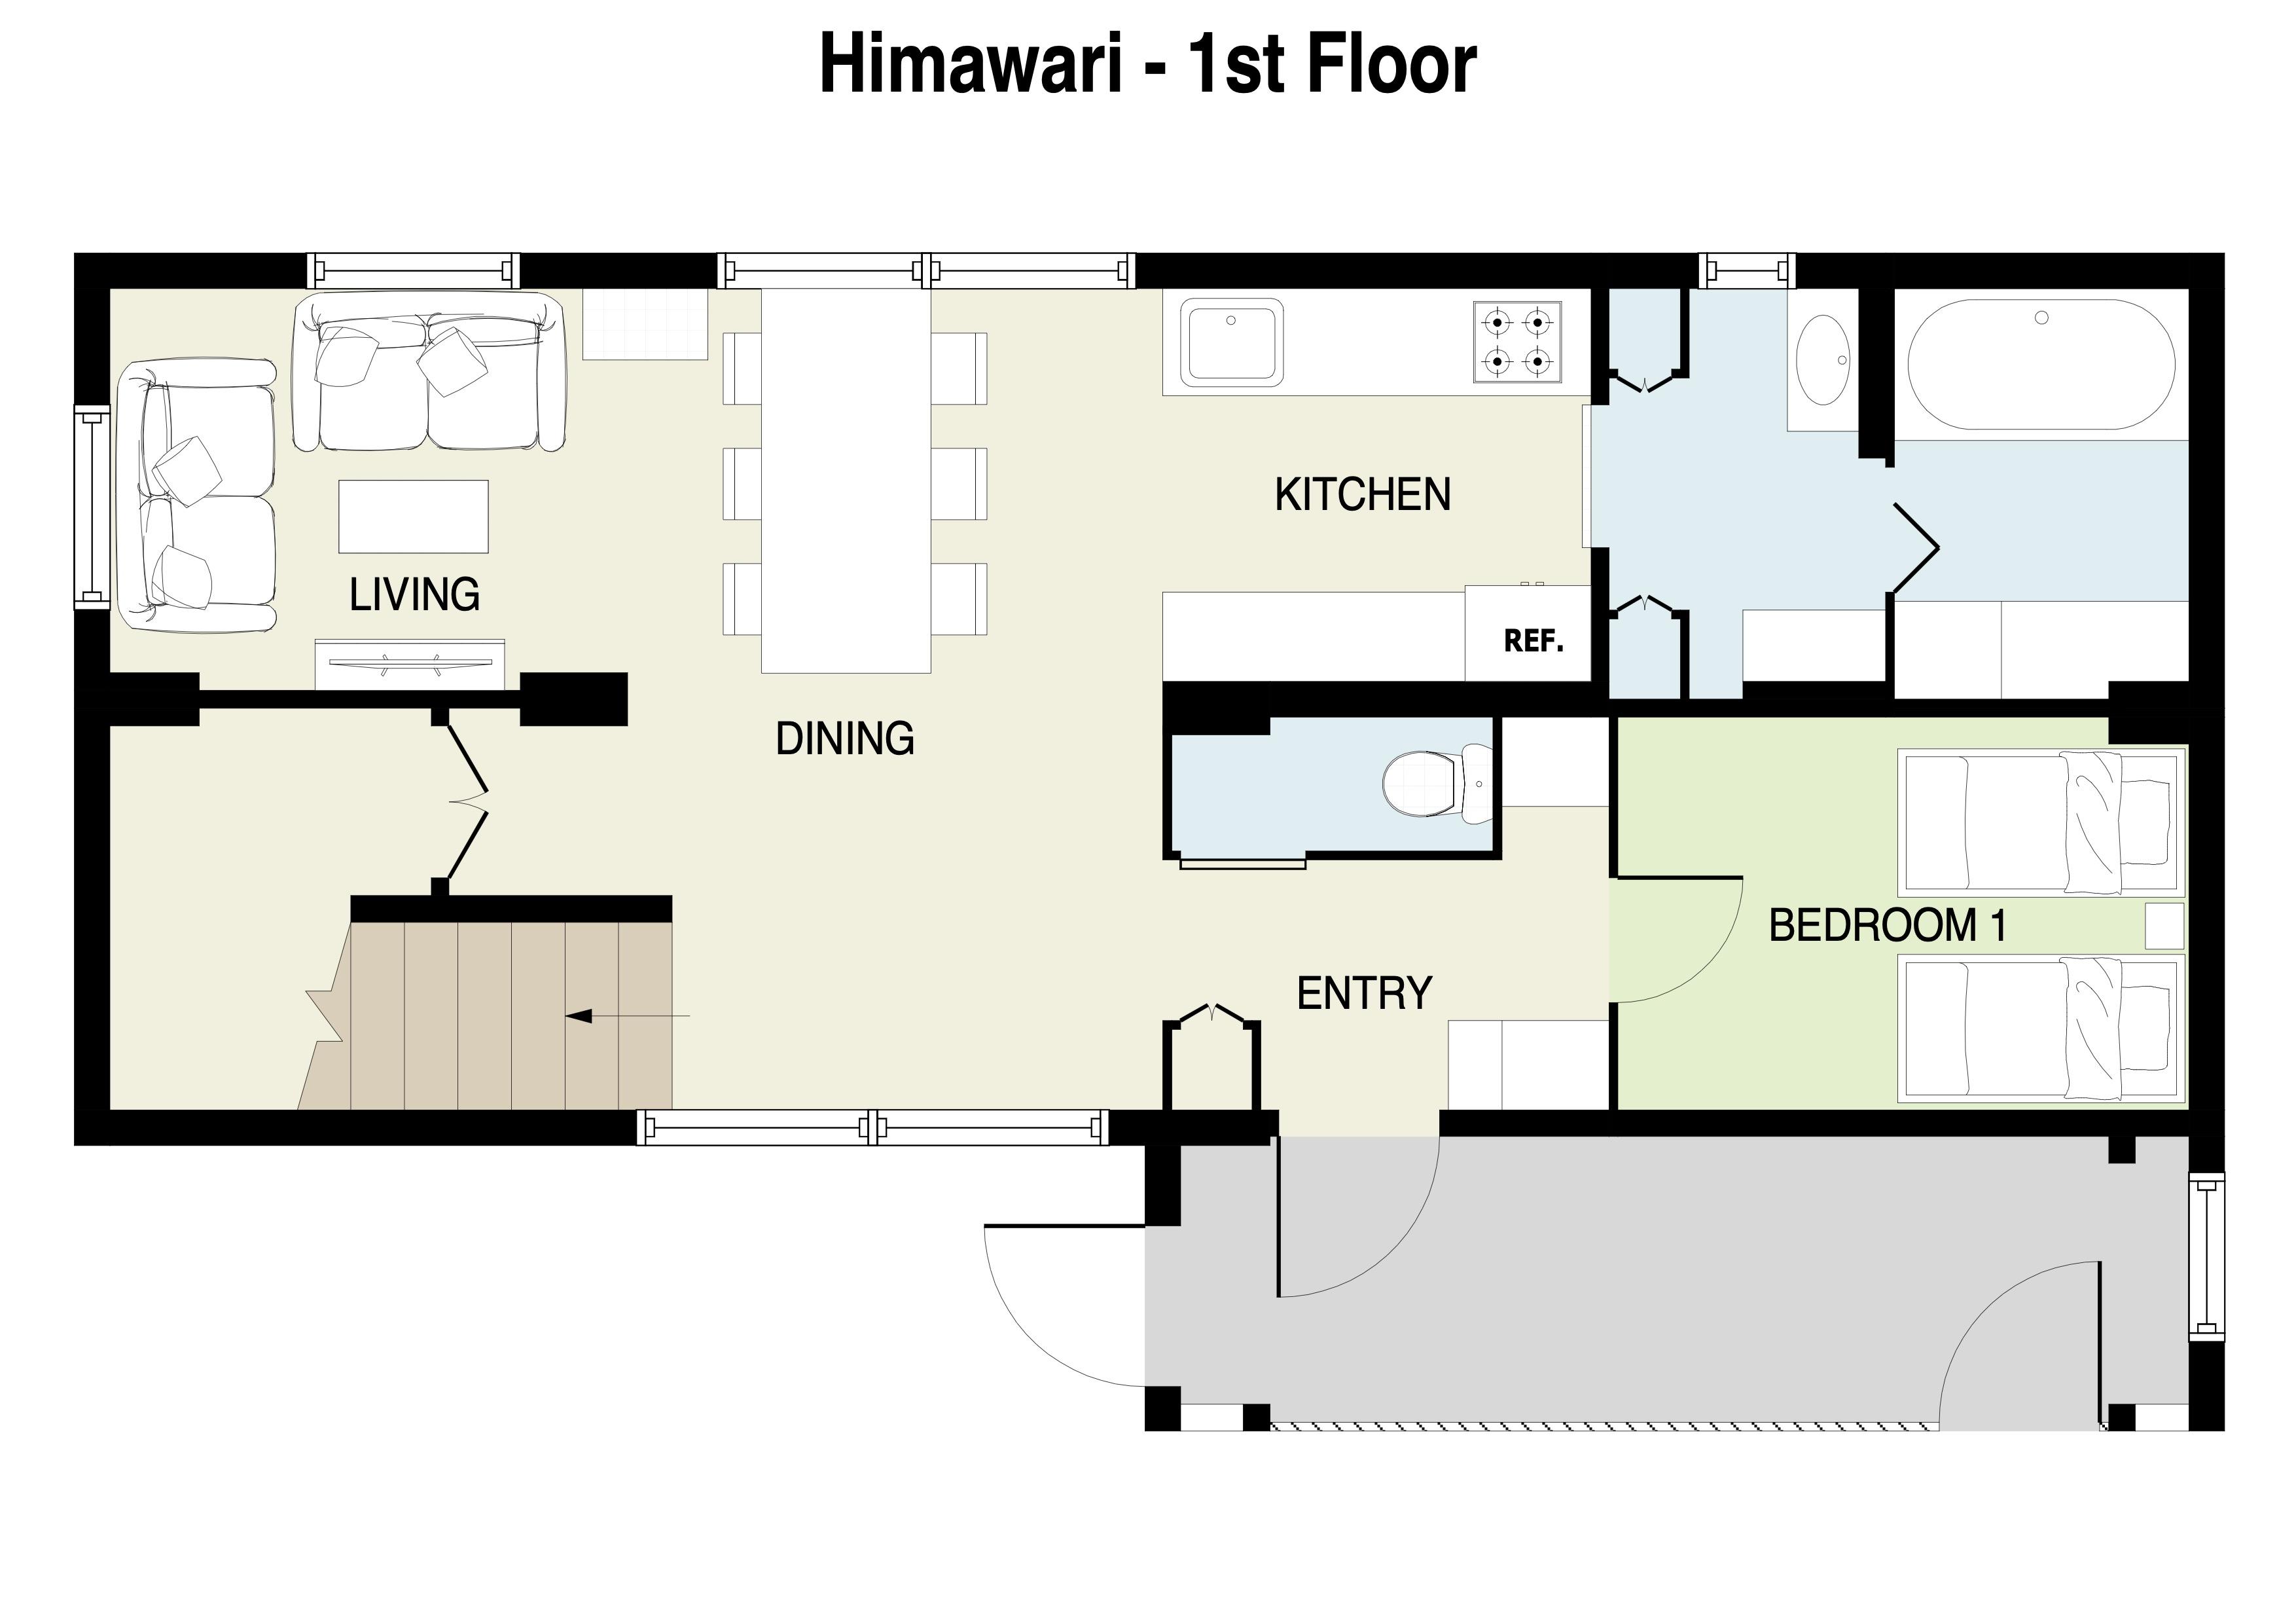 Himawari 1st Floor Plan